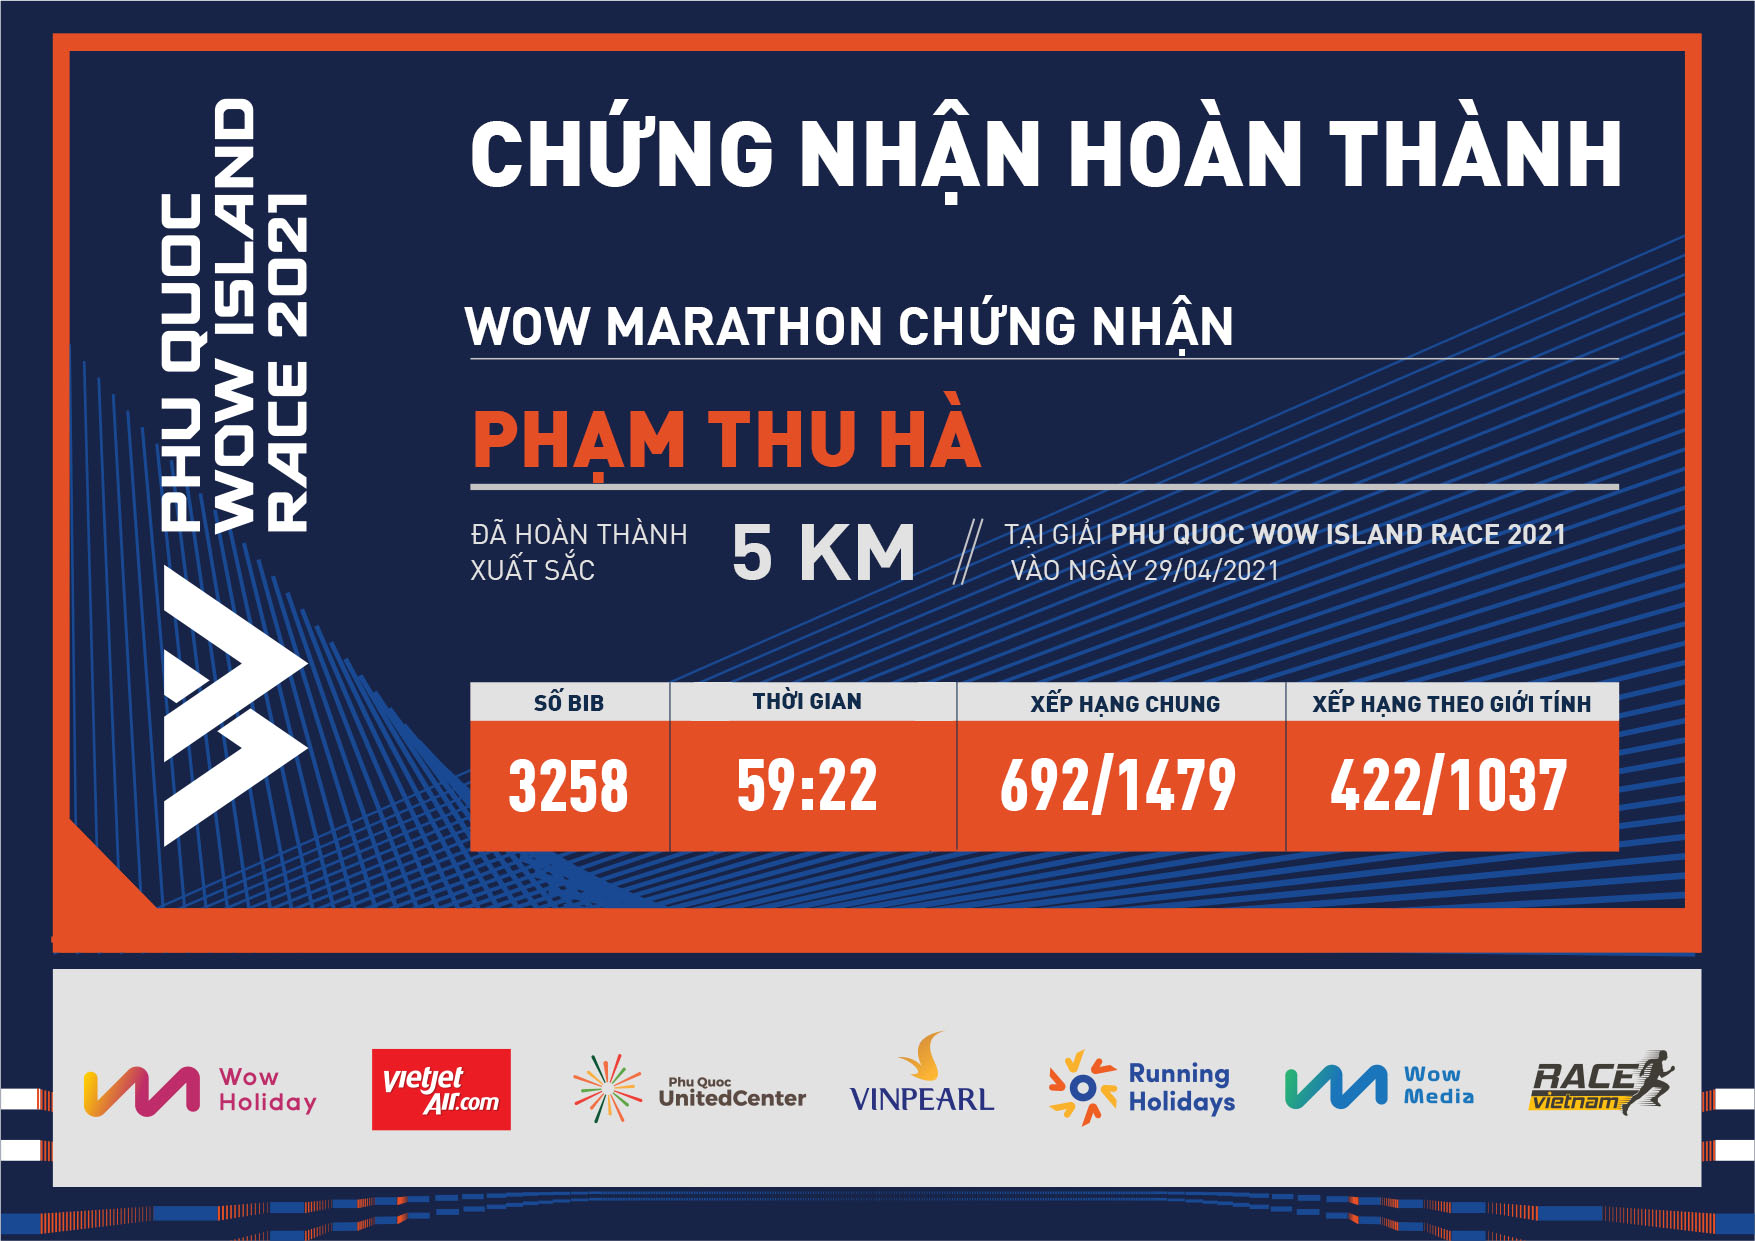 3258 - Phạm Thu Hà